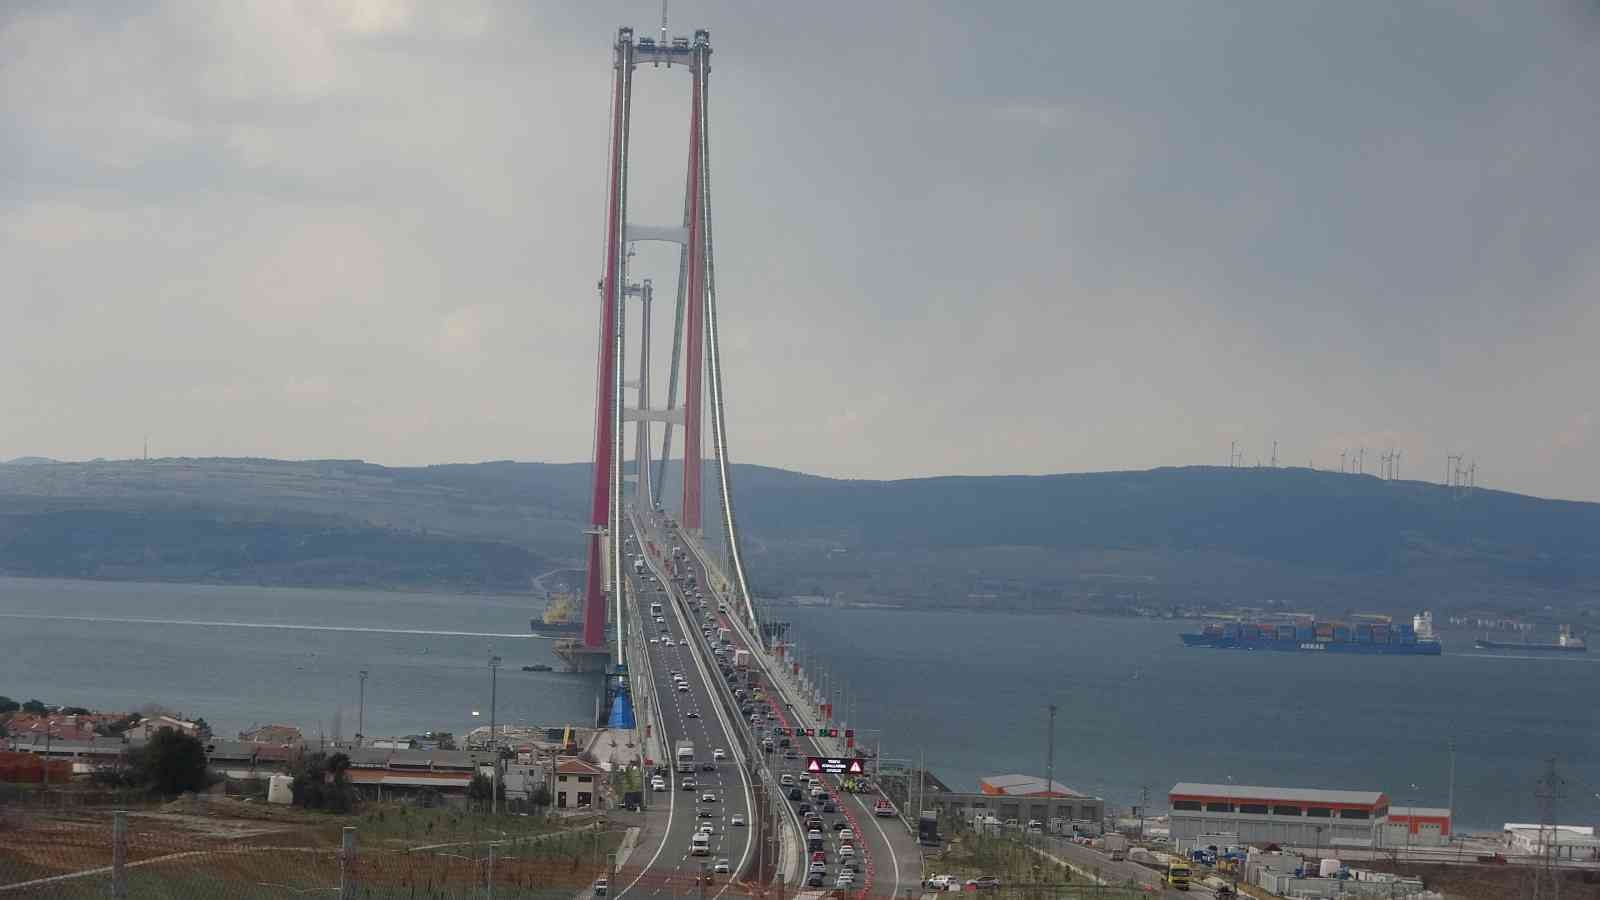 Dünyanın en büyük orta açıklıklı köprüsü unvanına sahip olan 1915 Çanakkale Köprüsü’nün araç geçişlerine açılmasının ardından uzun araç ...